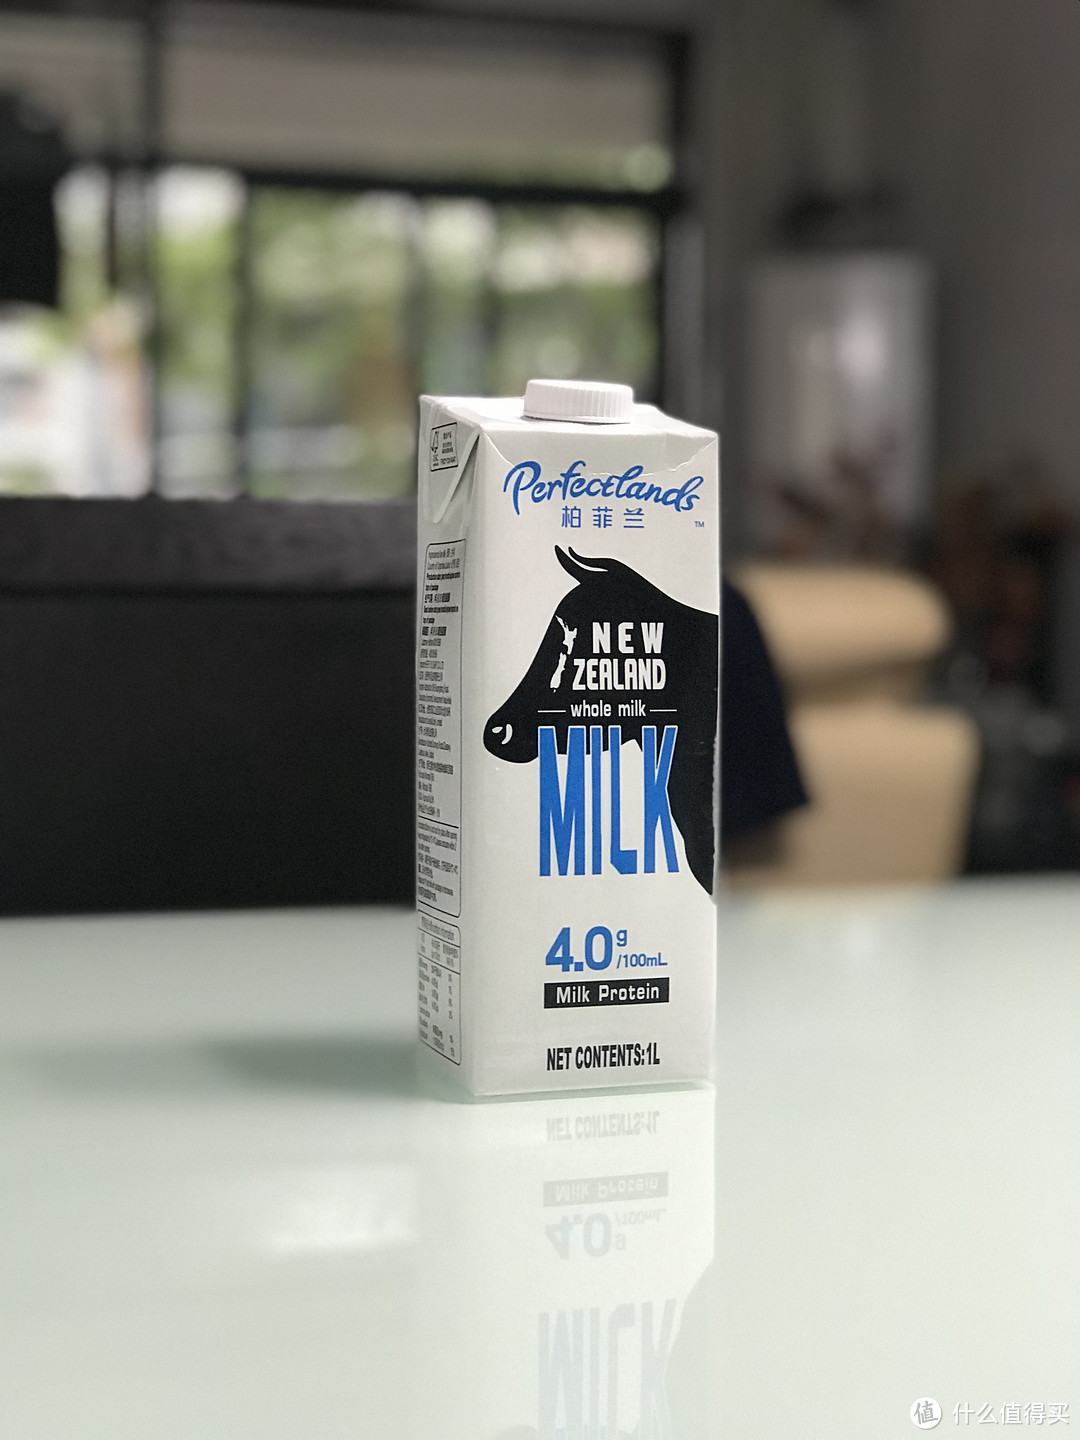 来自大草原的味道--Perfectlands柏菲兰 新西兰纯牛奶测评